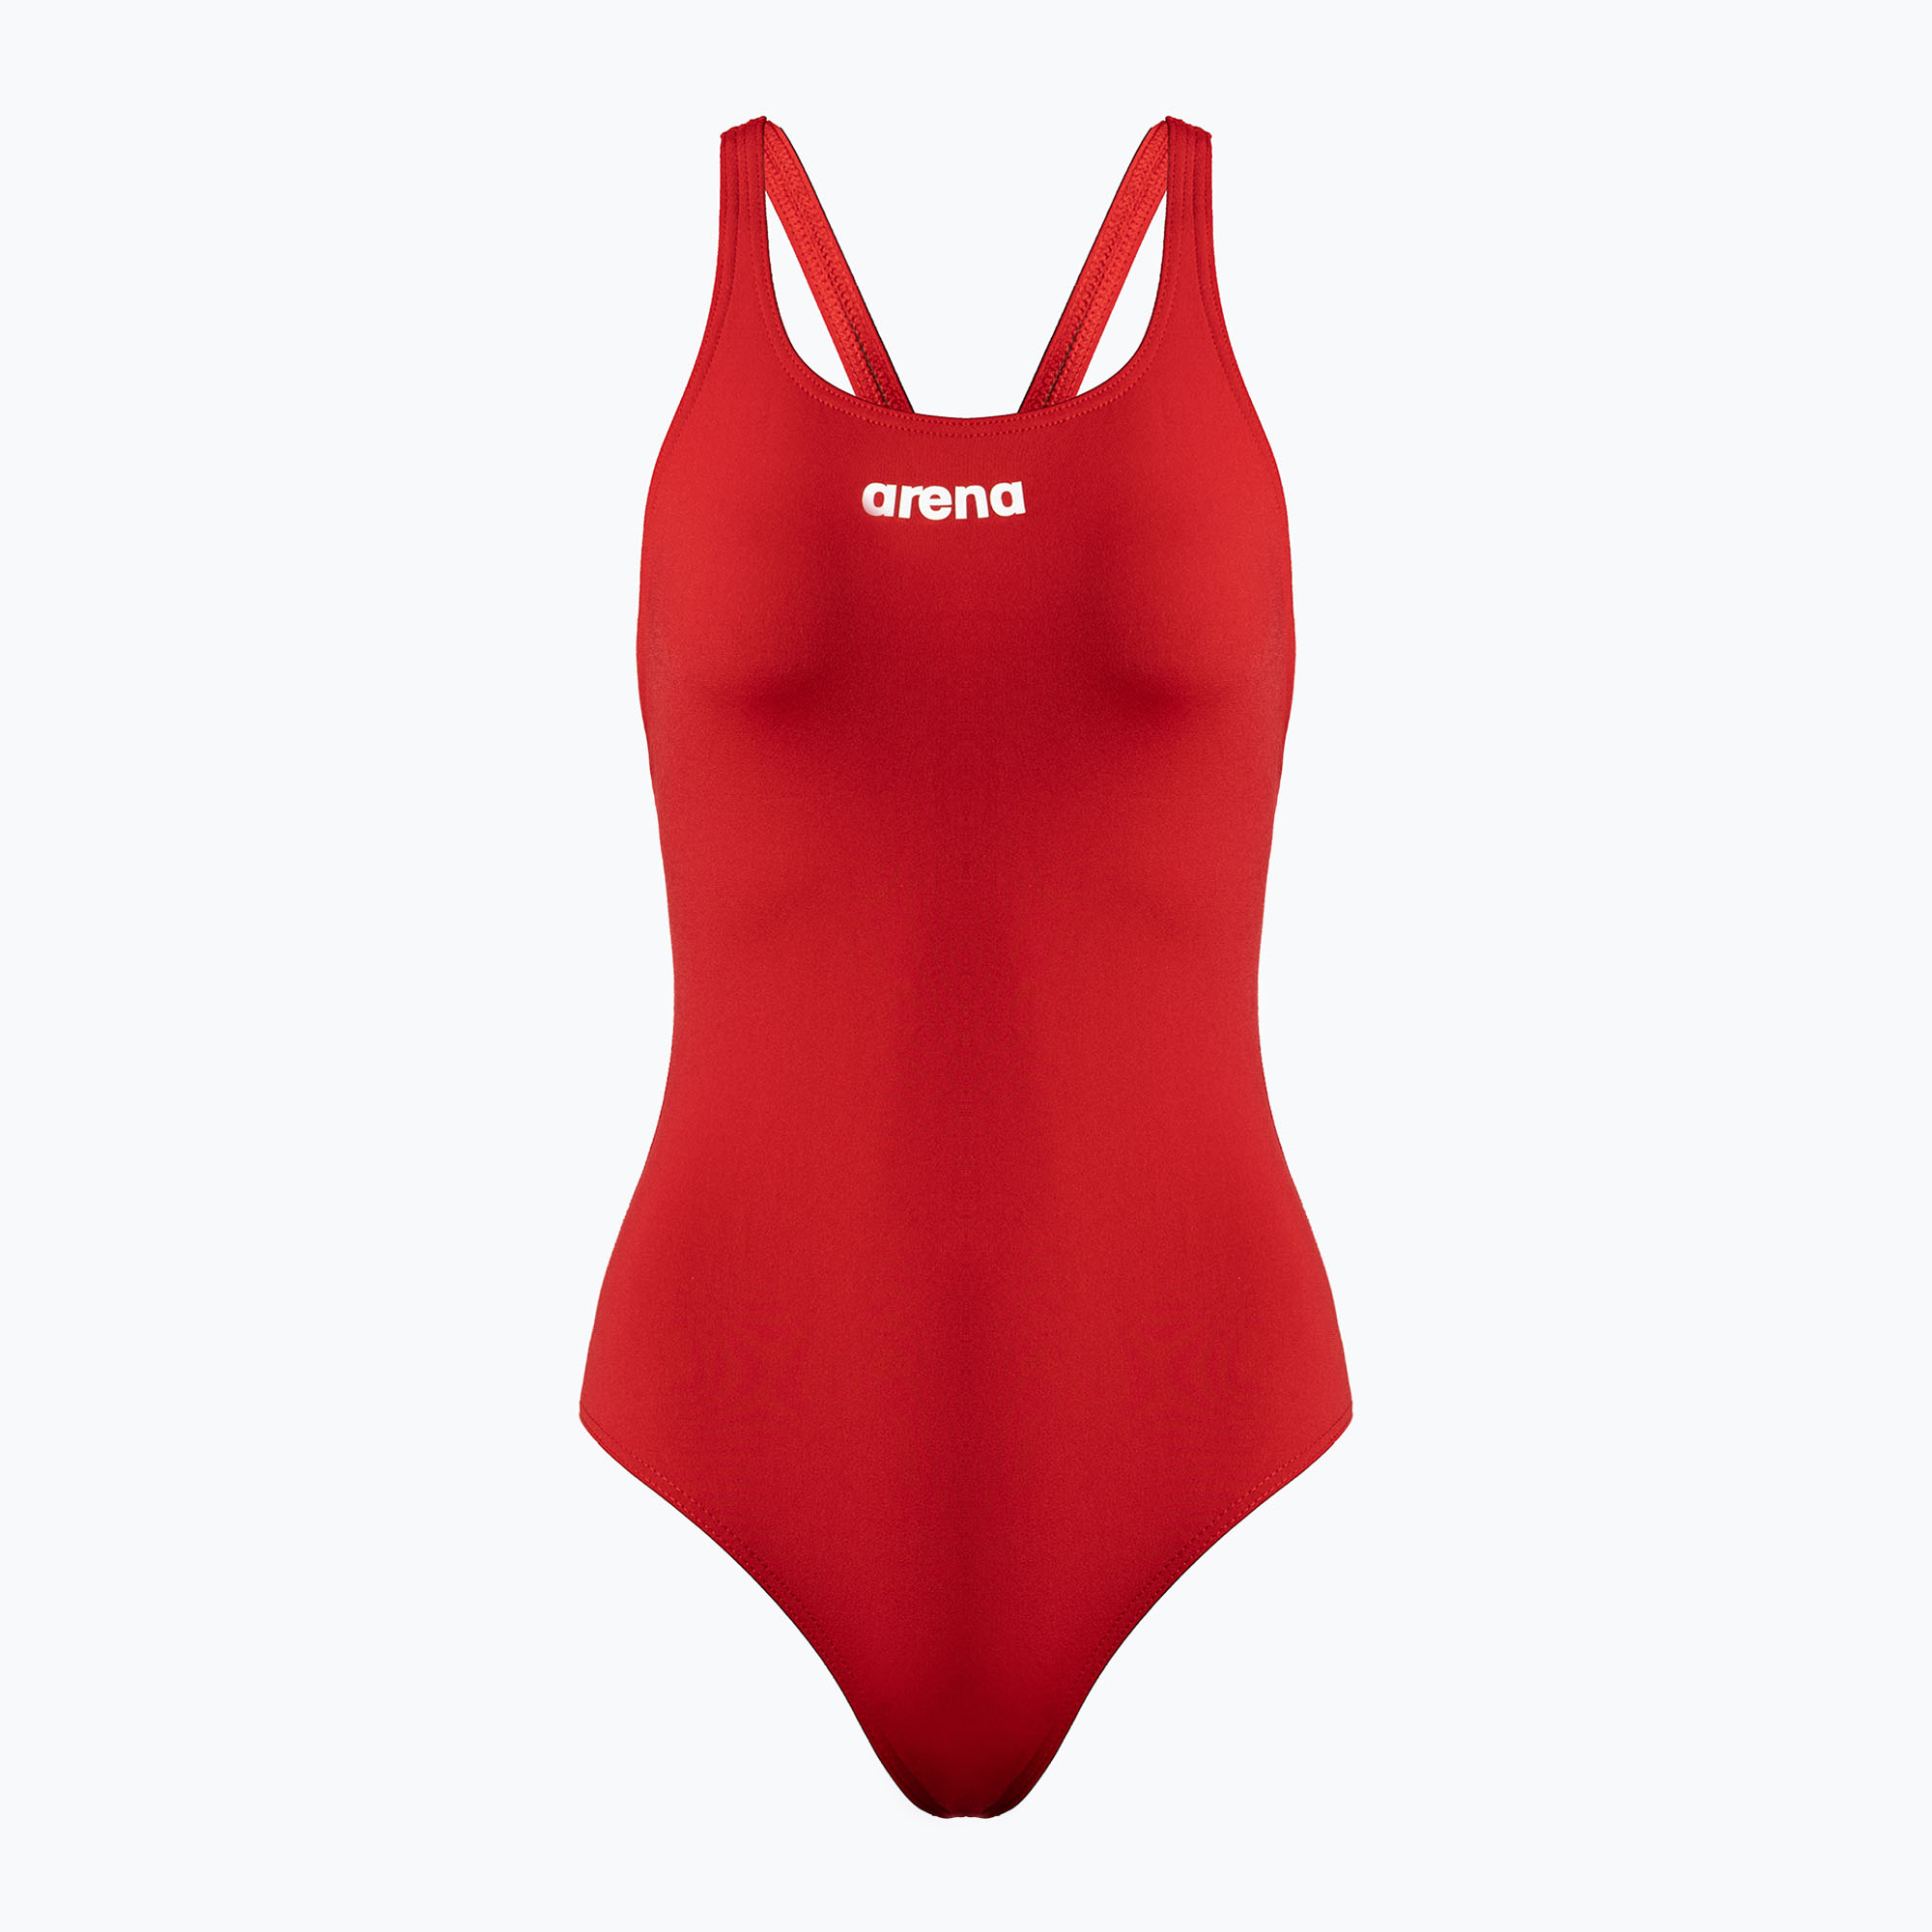 Дамски бански костюм от една част arena Team Swim Pro Solid red 004760/450